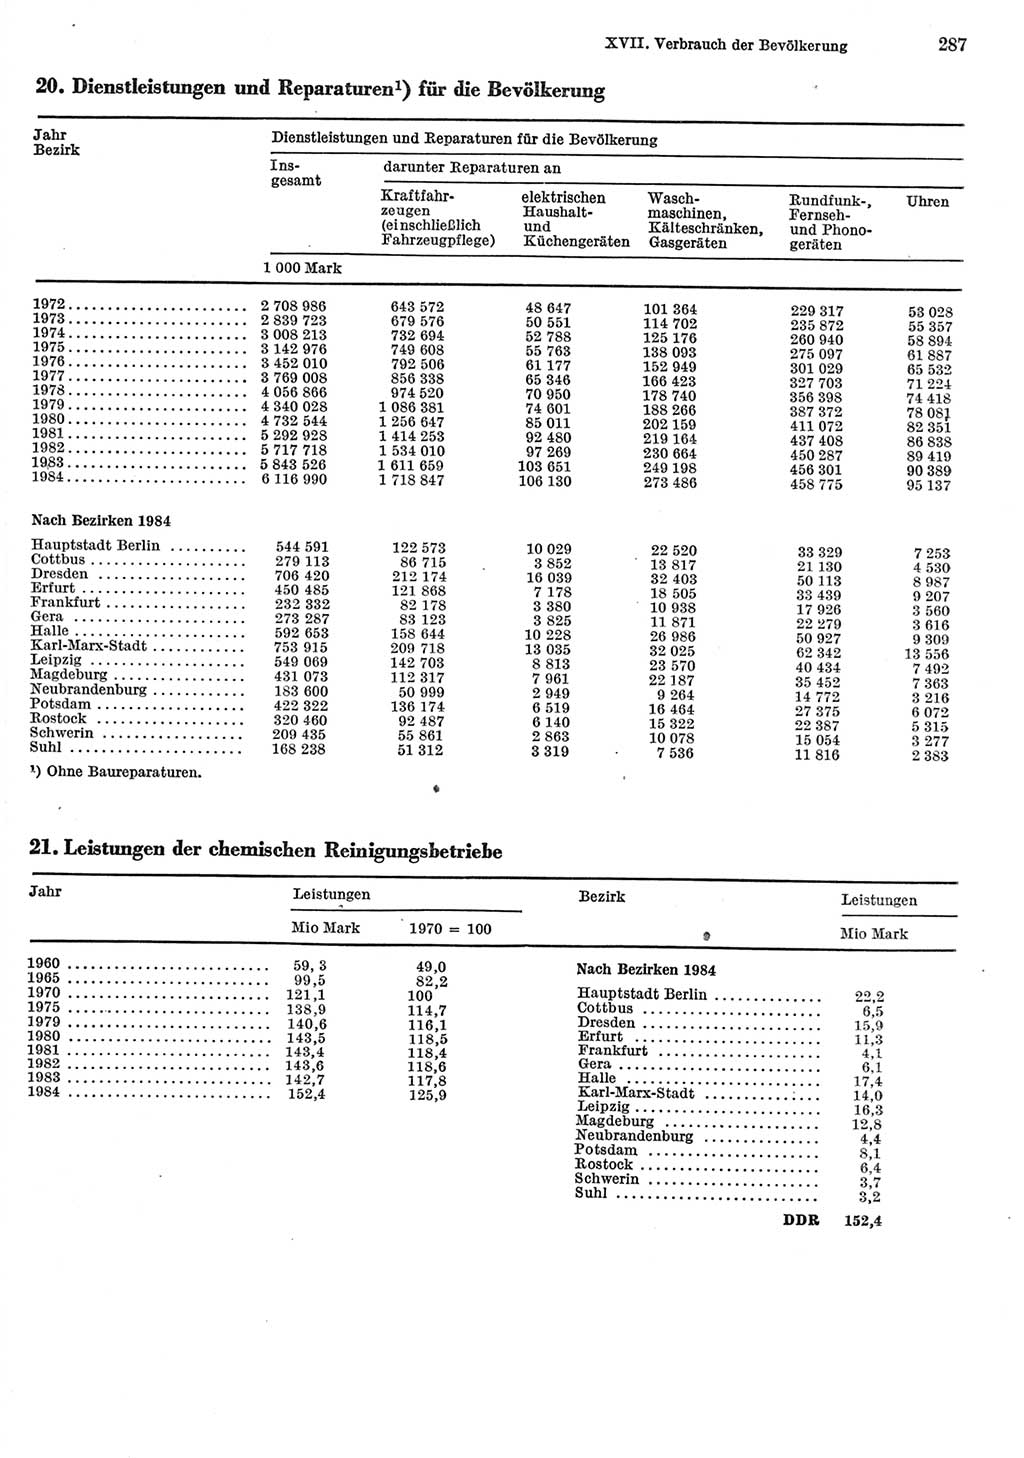 Statistisches Jahrbuch der Deutschen Demokratischen Republik (DDR) 1985, Seite 287 (Stat. Jb. DDR 1985, S. 287)